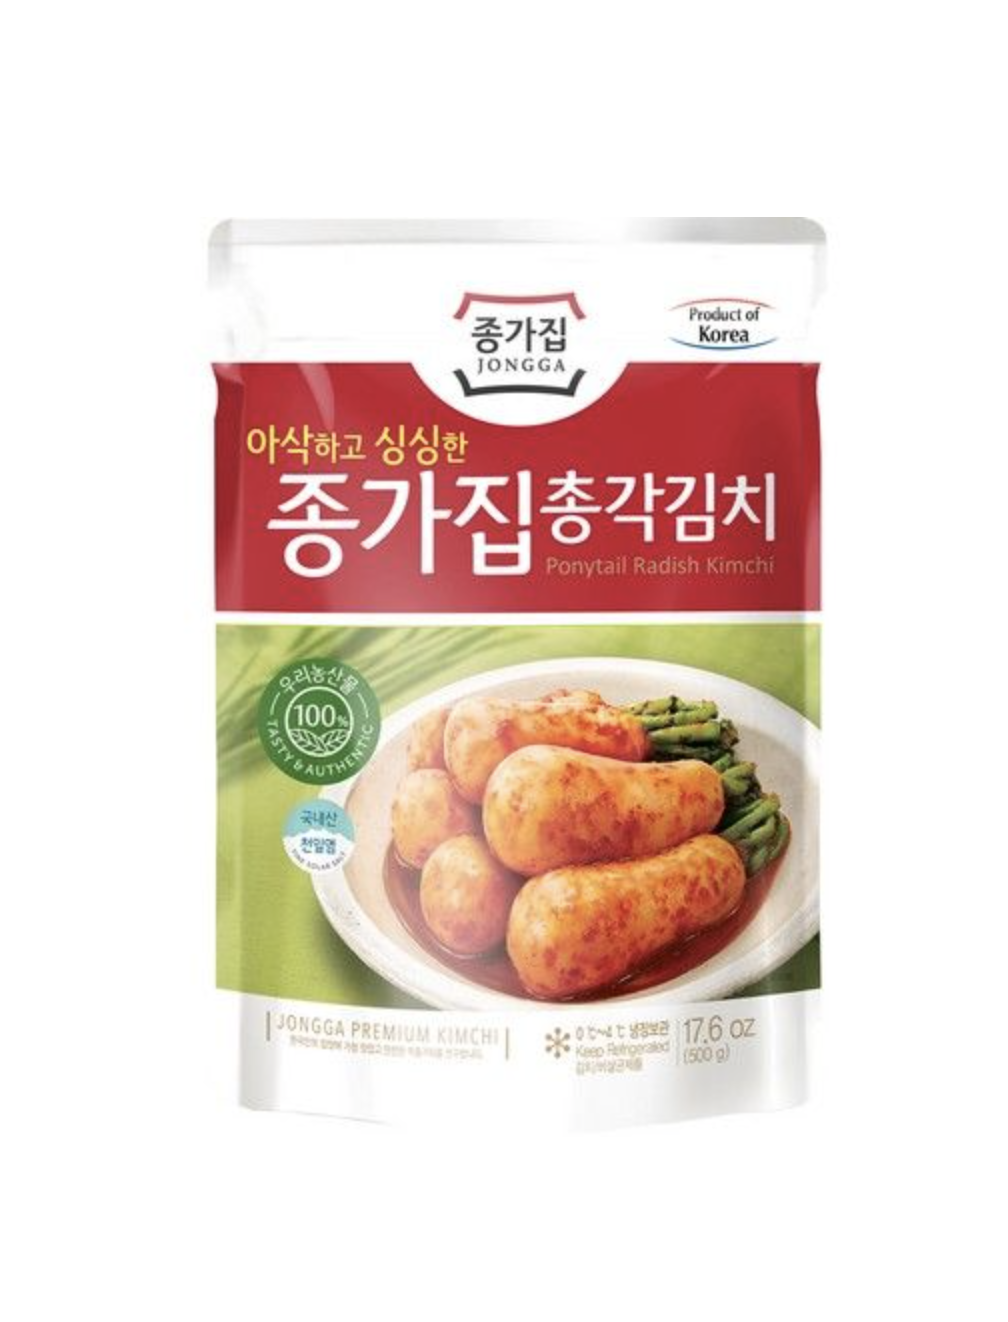 Chonggak Kimchi Rettich 500g Jongga Korea